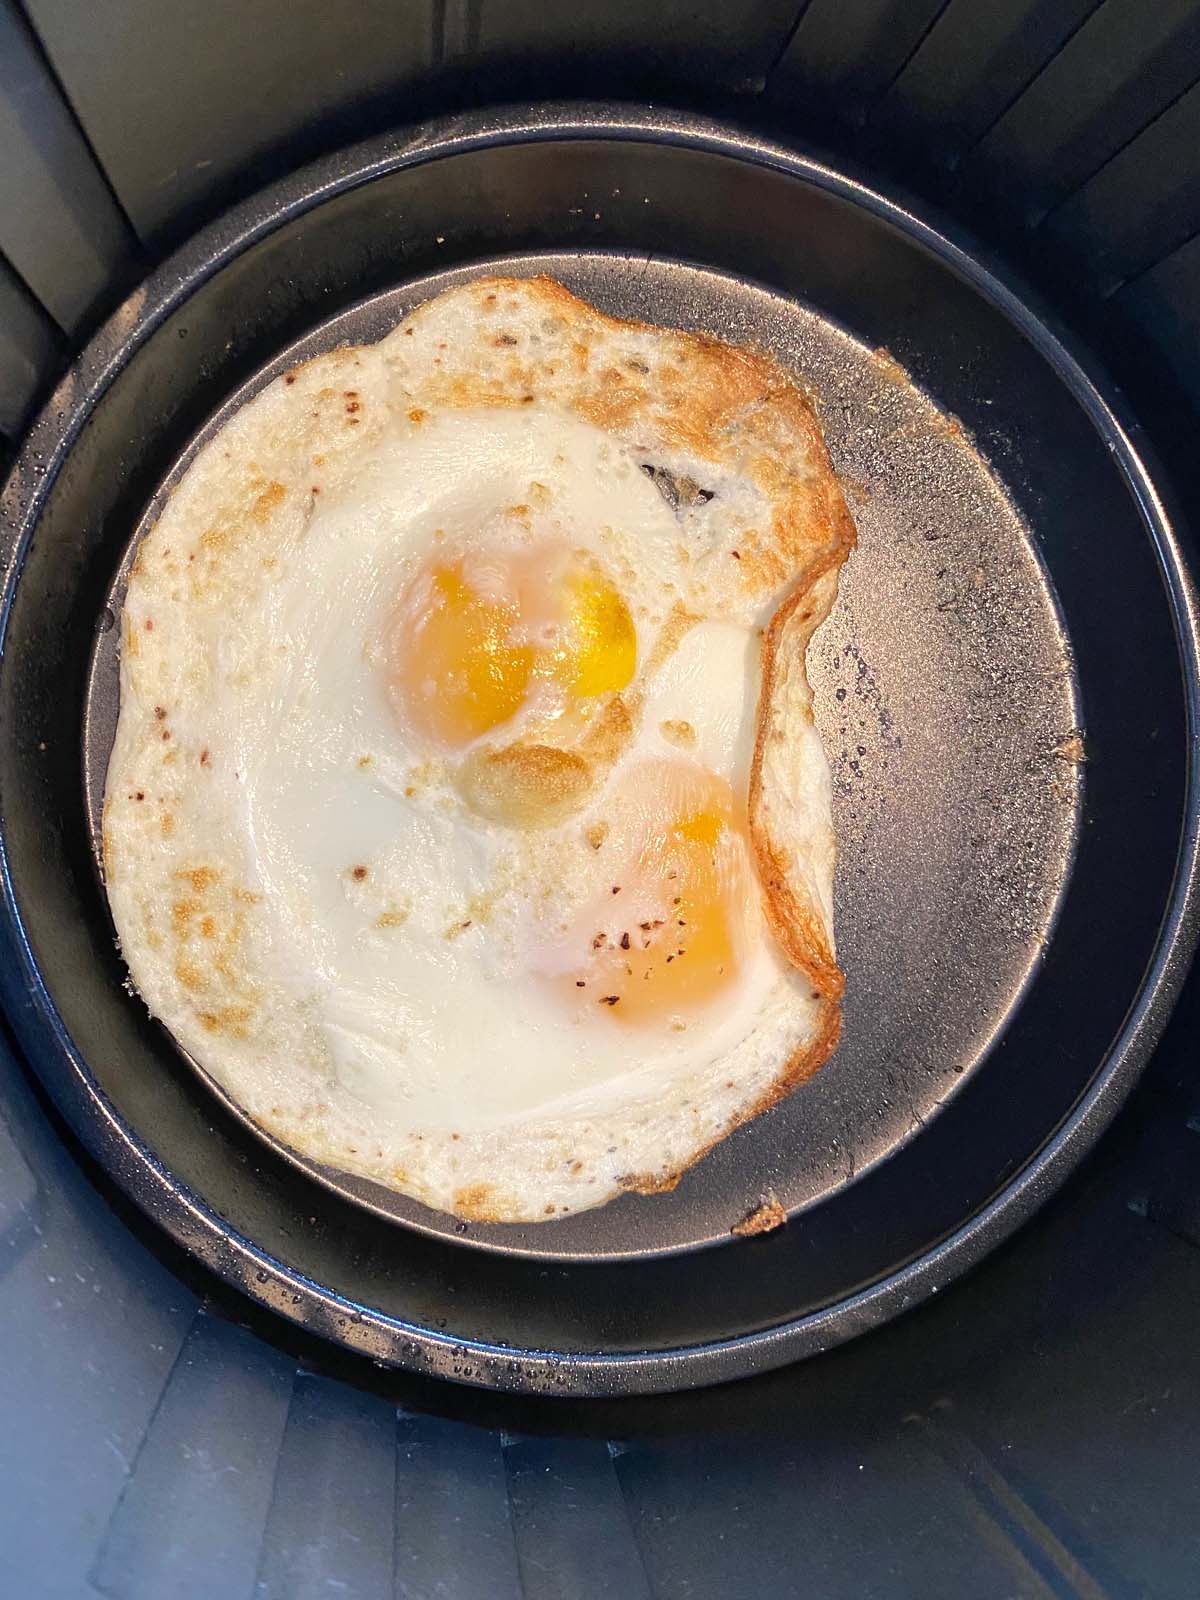 https://www.melaniecooks.com/wp-content/uploads/2022/03/Air-Fryer-Fried-Eggs-5.jpg